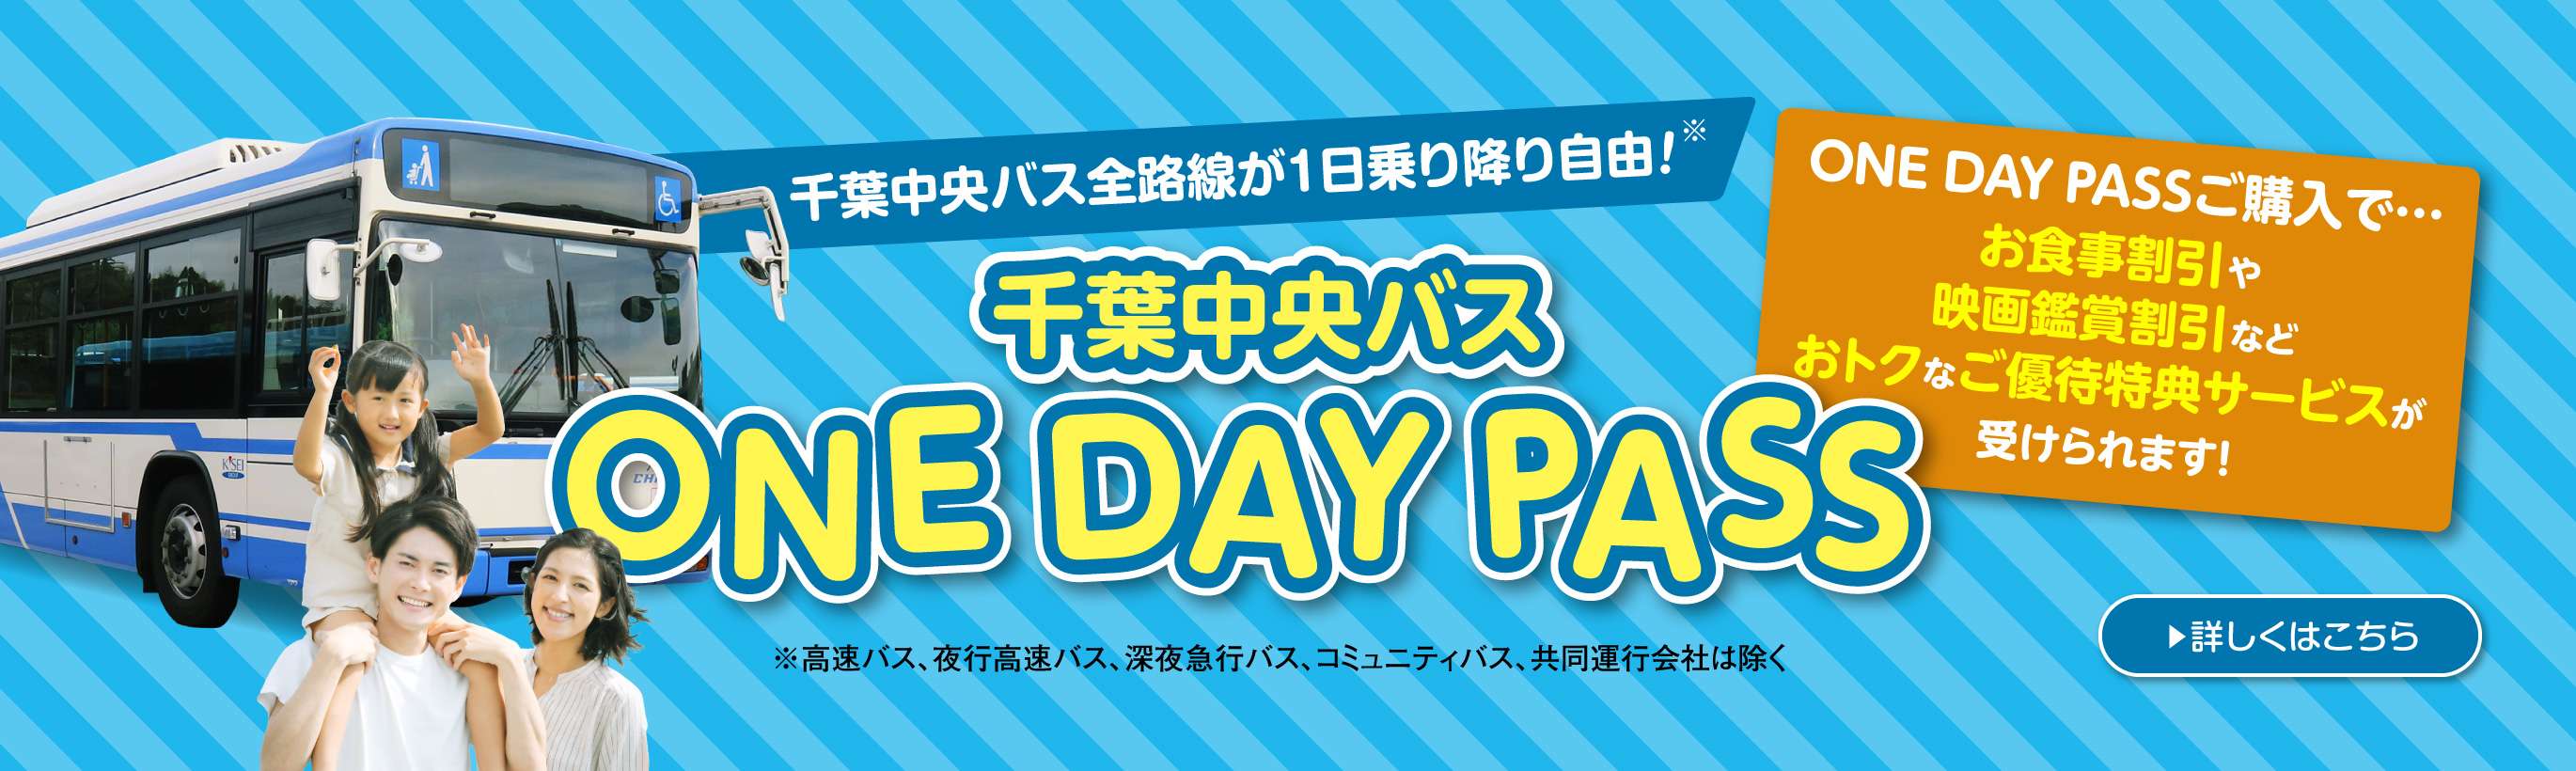 千葉中央バスの1日乗車券 One Day Pass